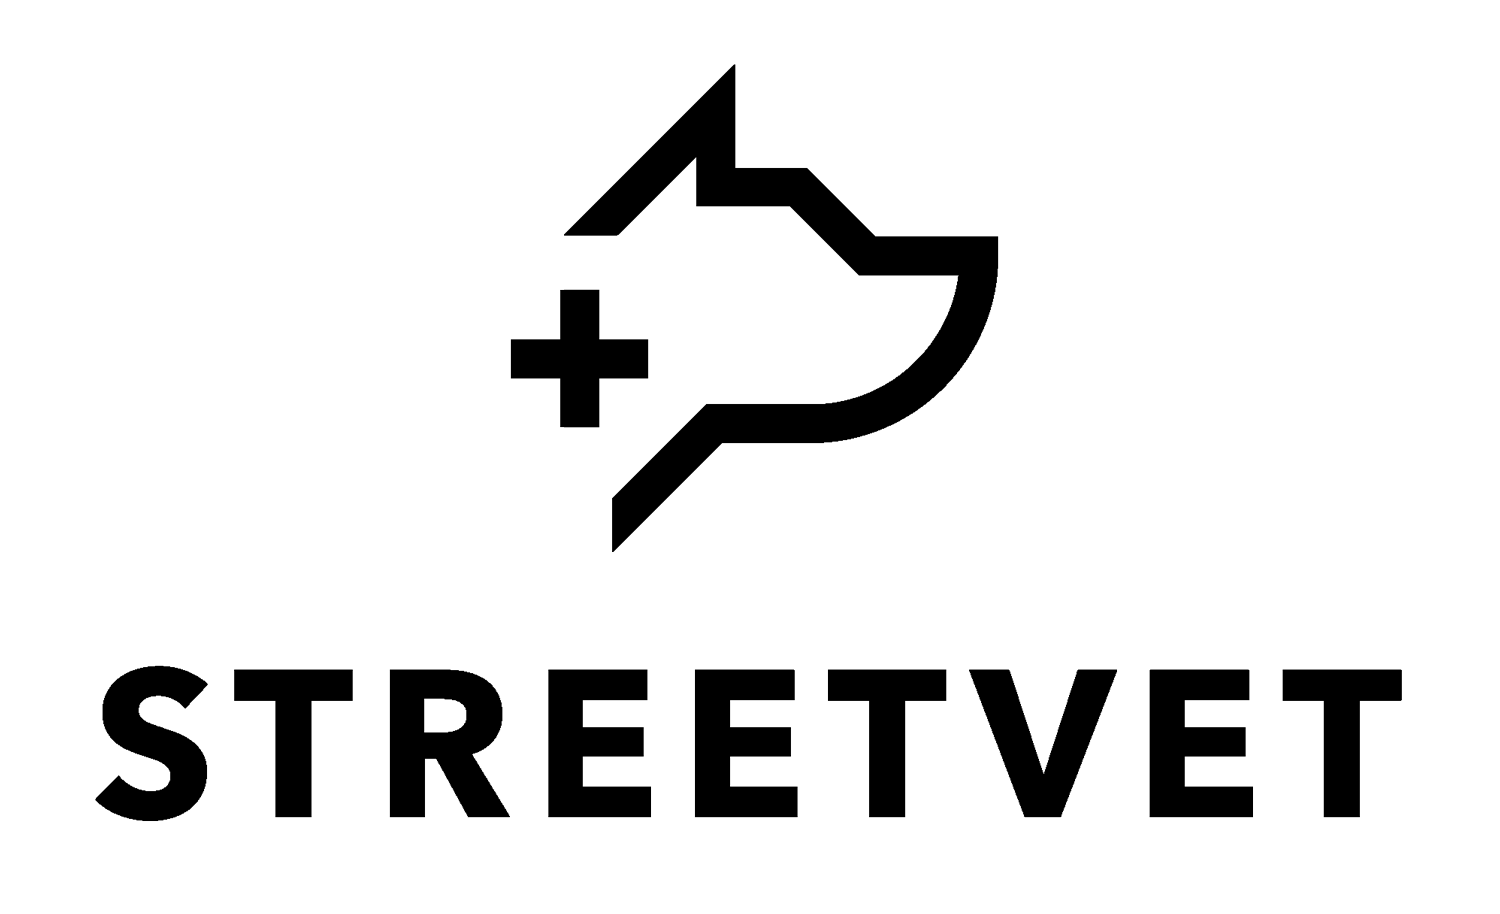 Streetvet logo in black